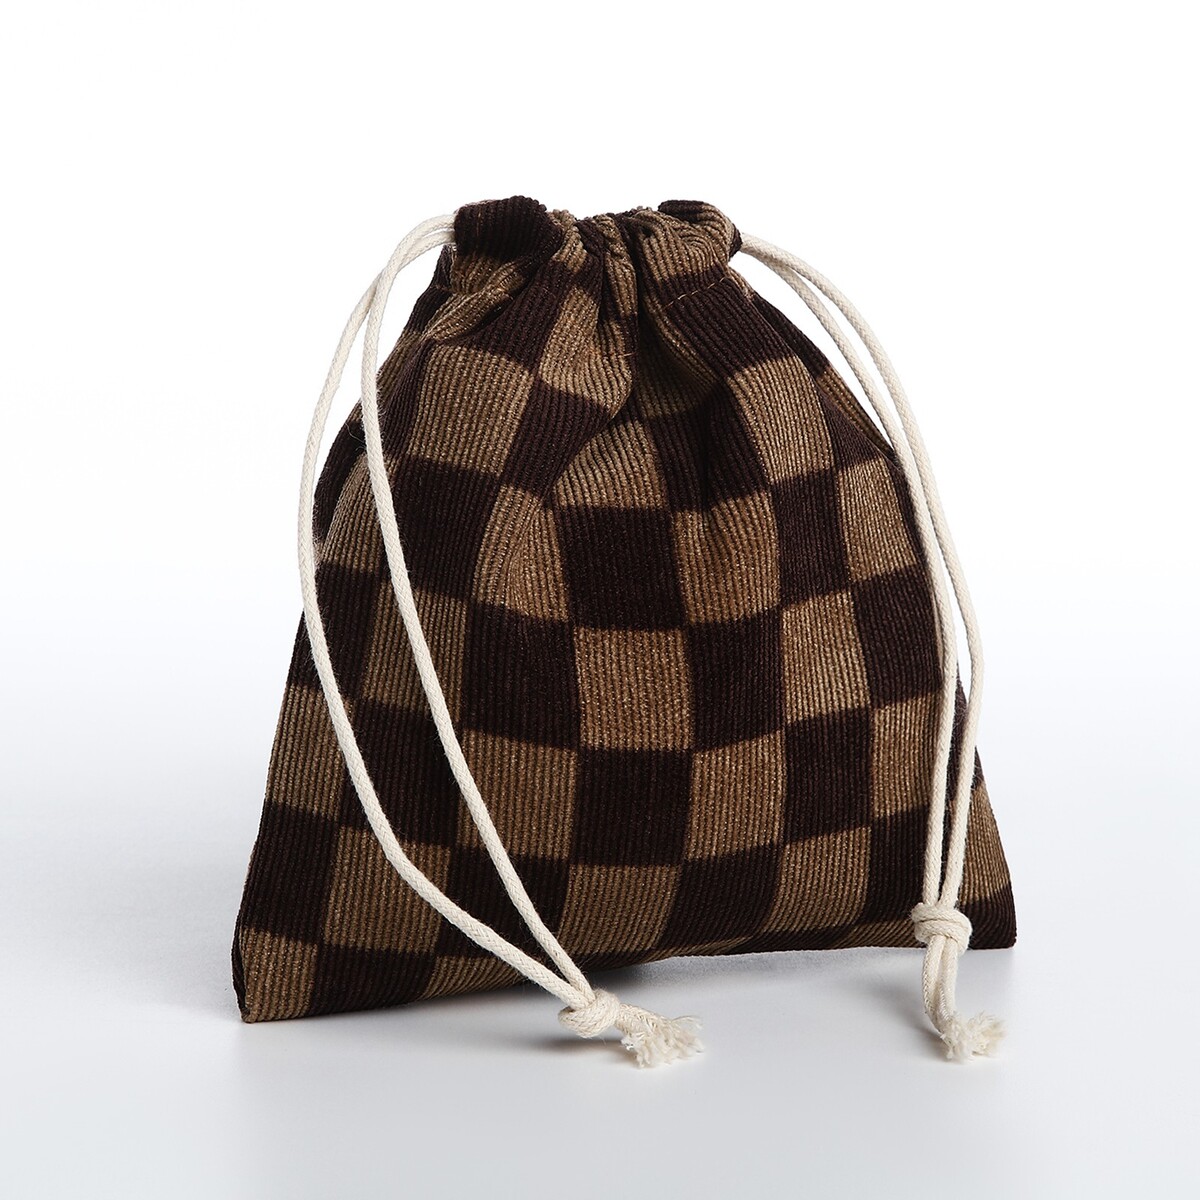 Косметичка - мешок с завязками, цвет коричневый косметичка мешок с завязками горчичный